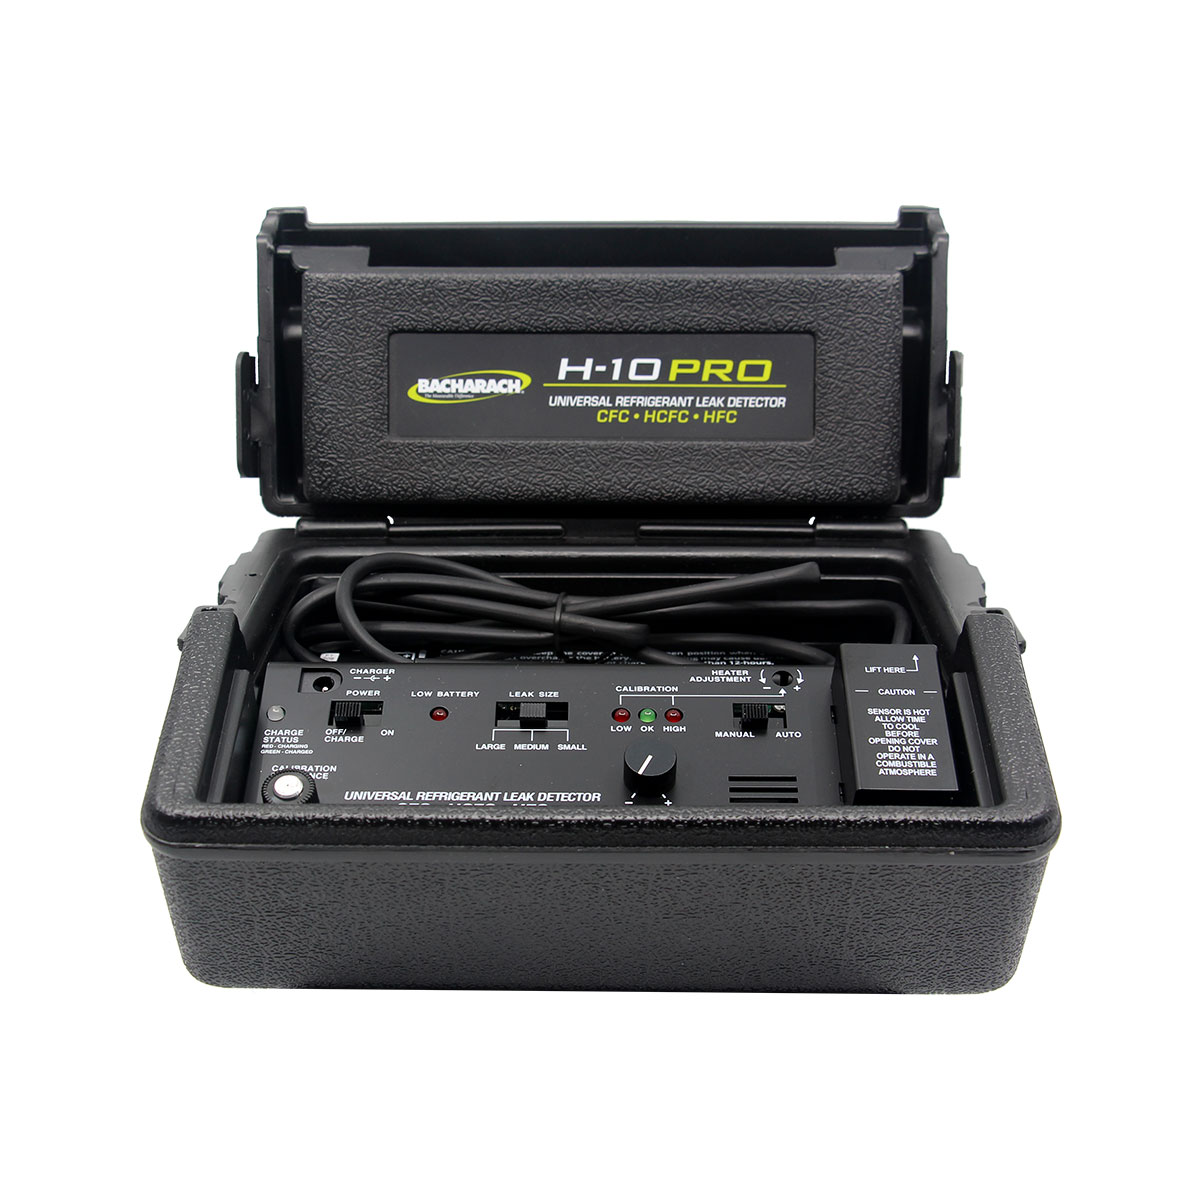 Kältemittelleckdetektor H-10 PRO für die Wartung der Klimaanlage